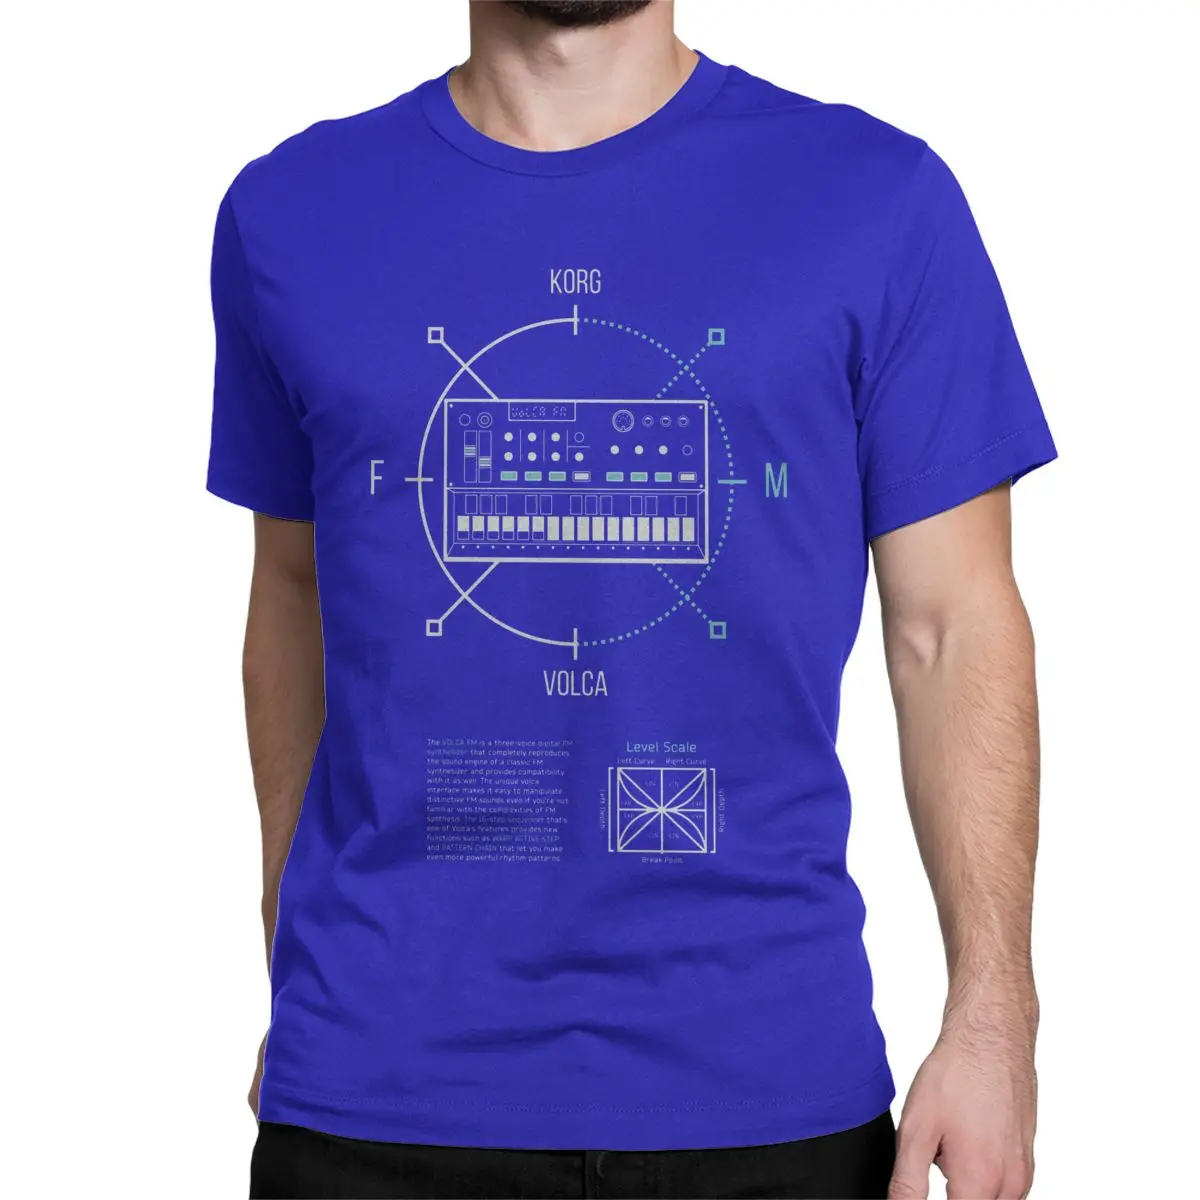 Для мужчин Volca FM Круглый Korg Volca футболка синтезатор музыка синтезатор электро модульная техно Хлопок Зимняя футболка - Цвет: Синий